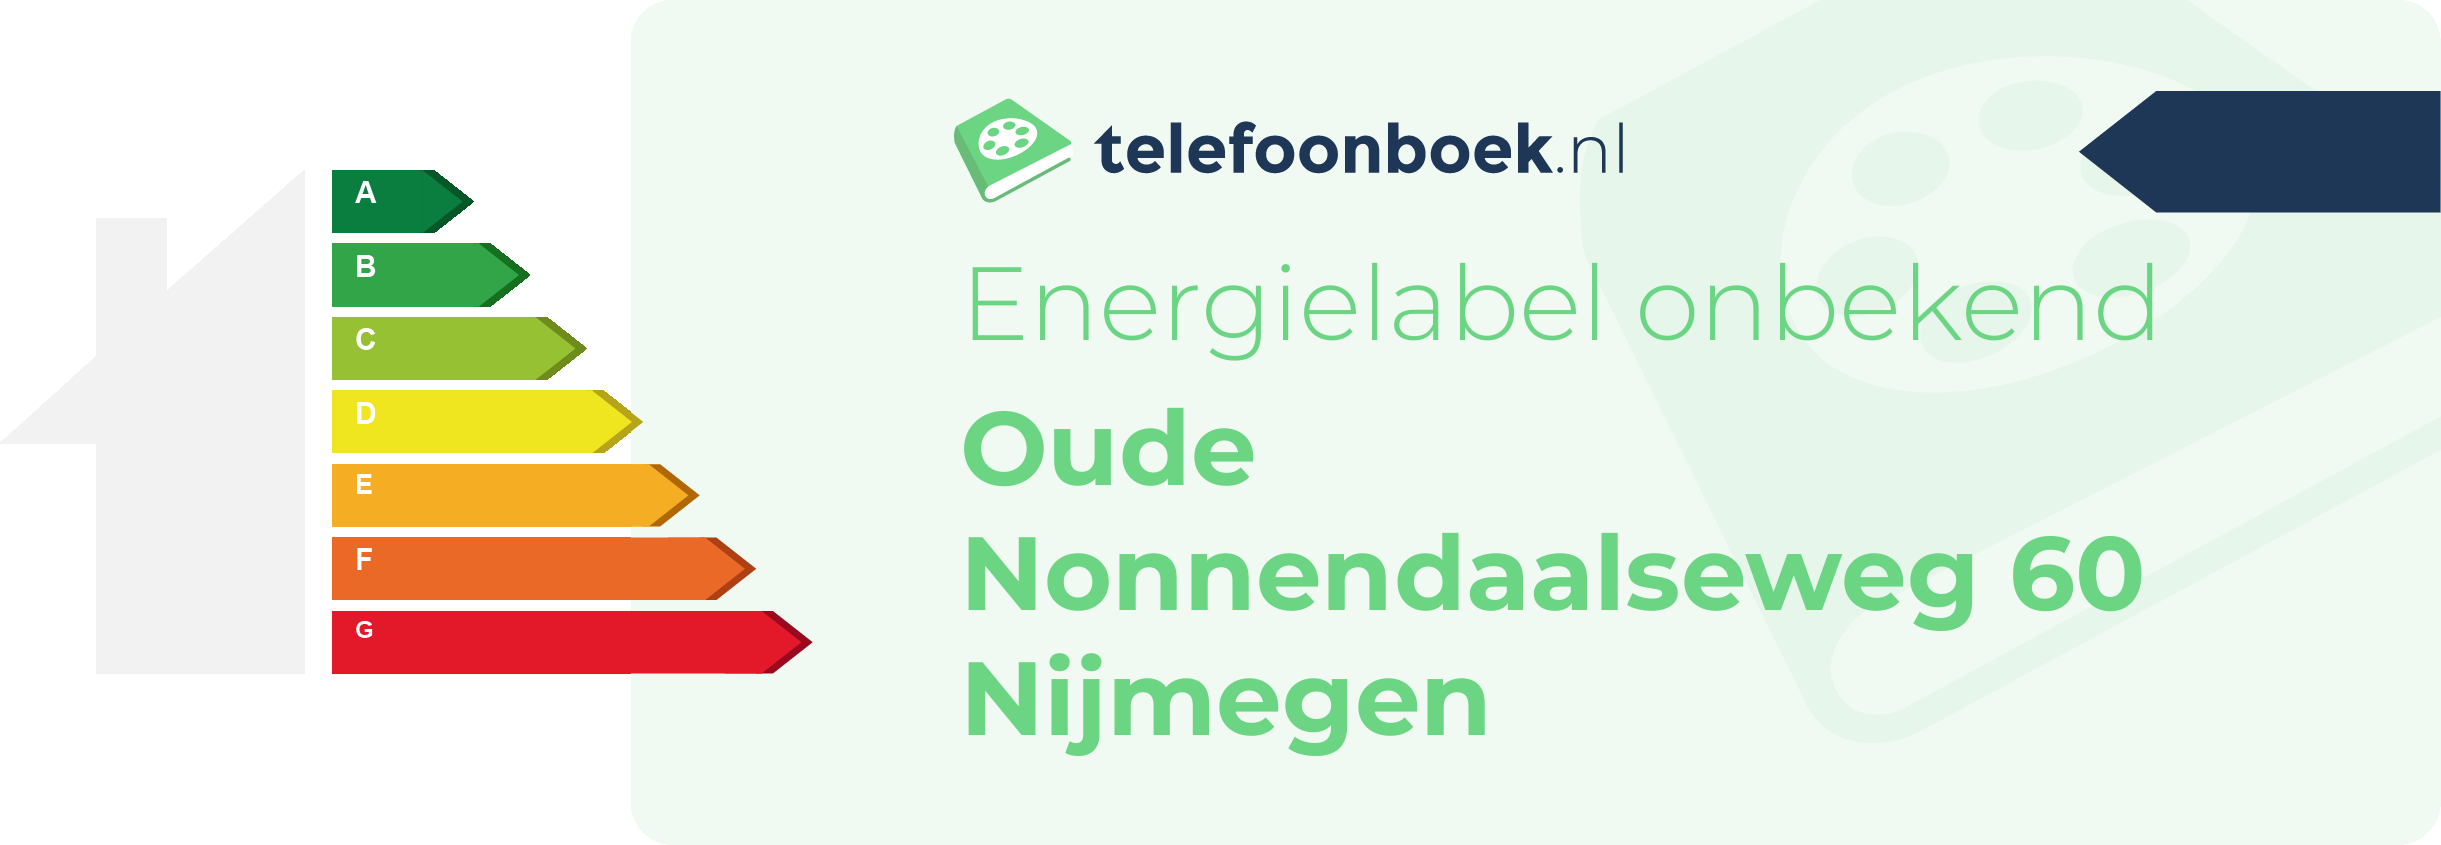 Energielabel Oude Nonnendaalseweg 60 Nijmegen